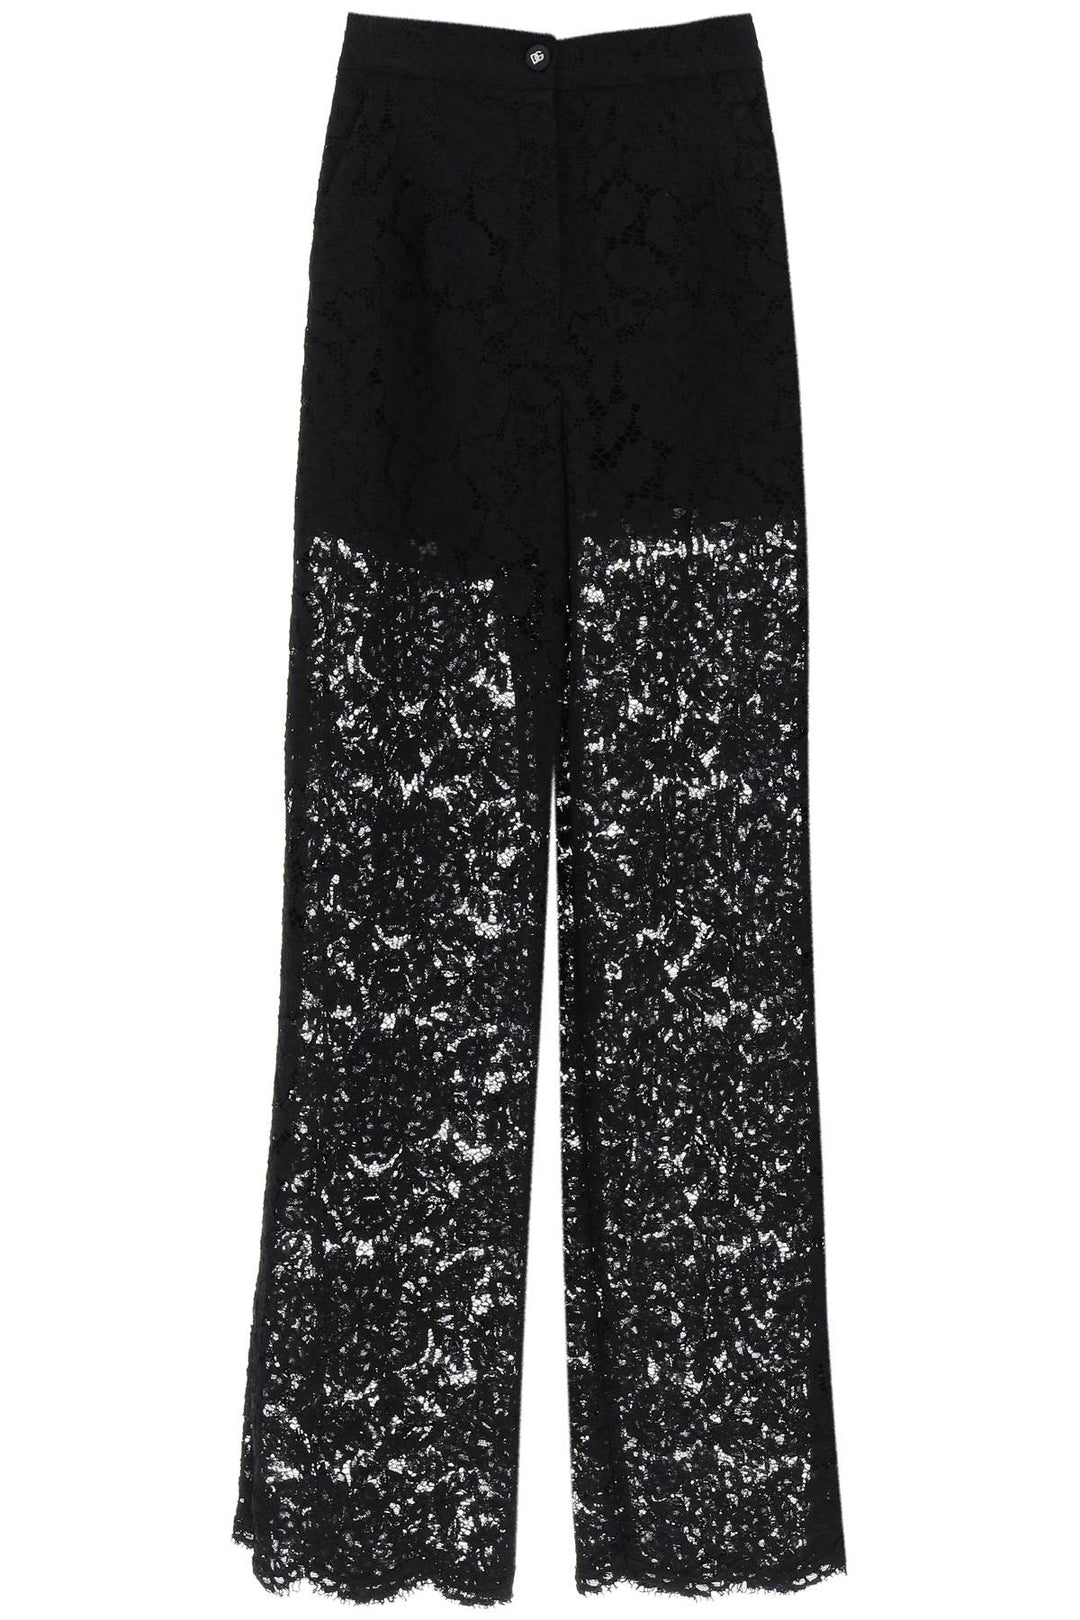 Dolce & Gabbana Lace Pants   Nero